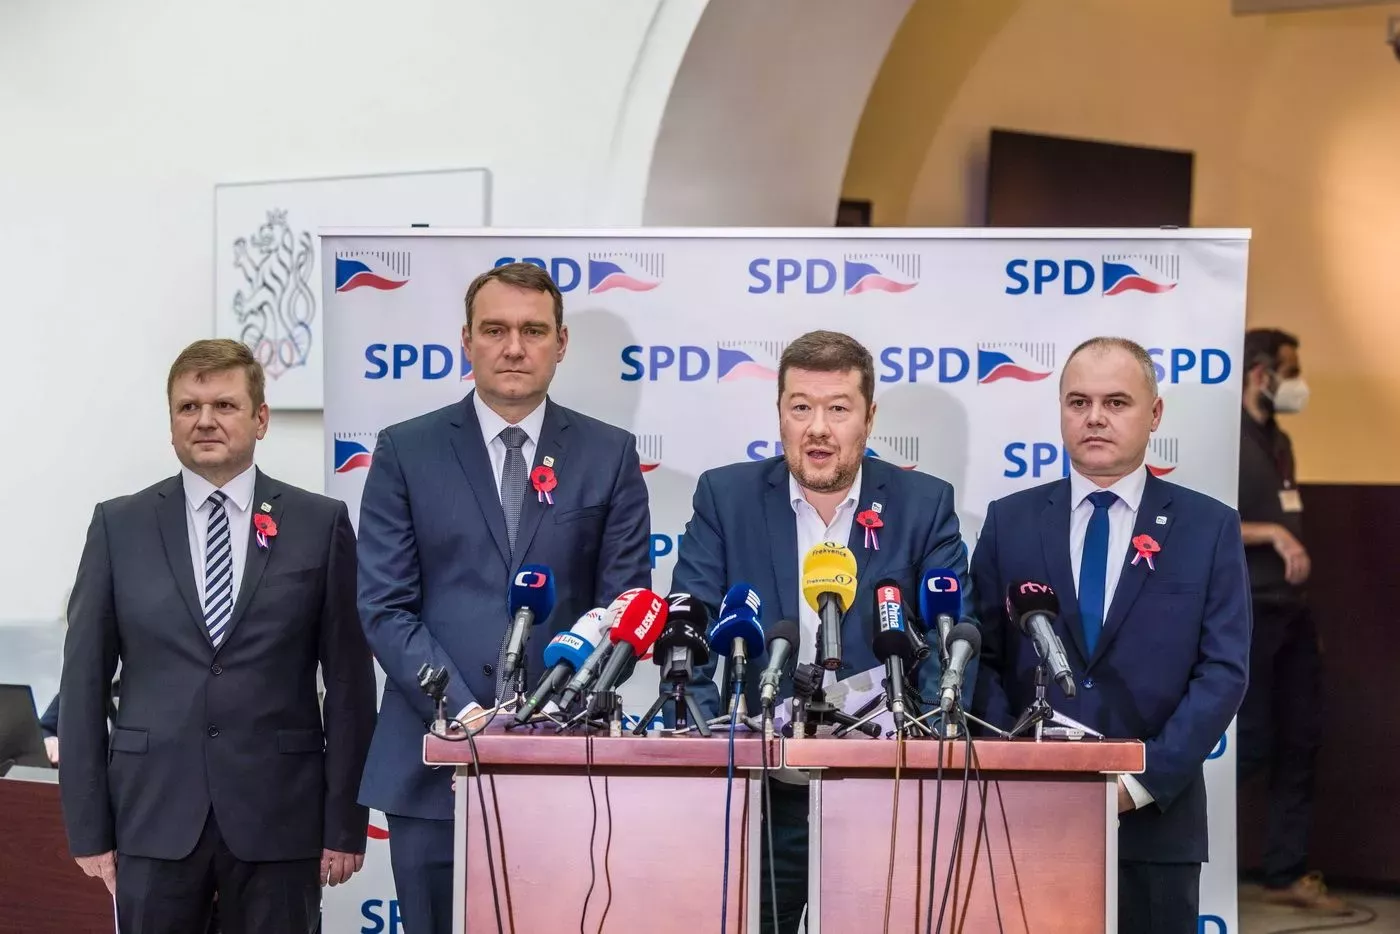 Svoboda a přímá demokracie (SPD)